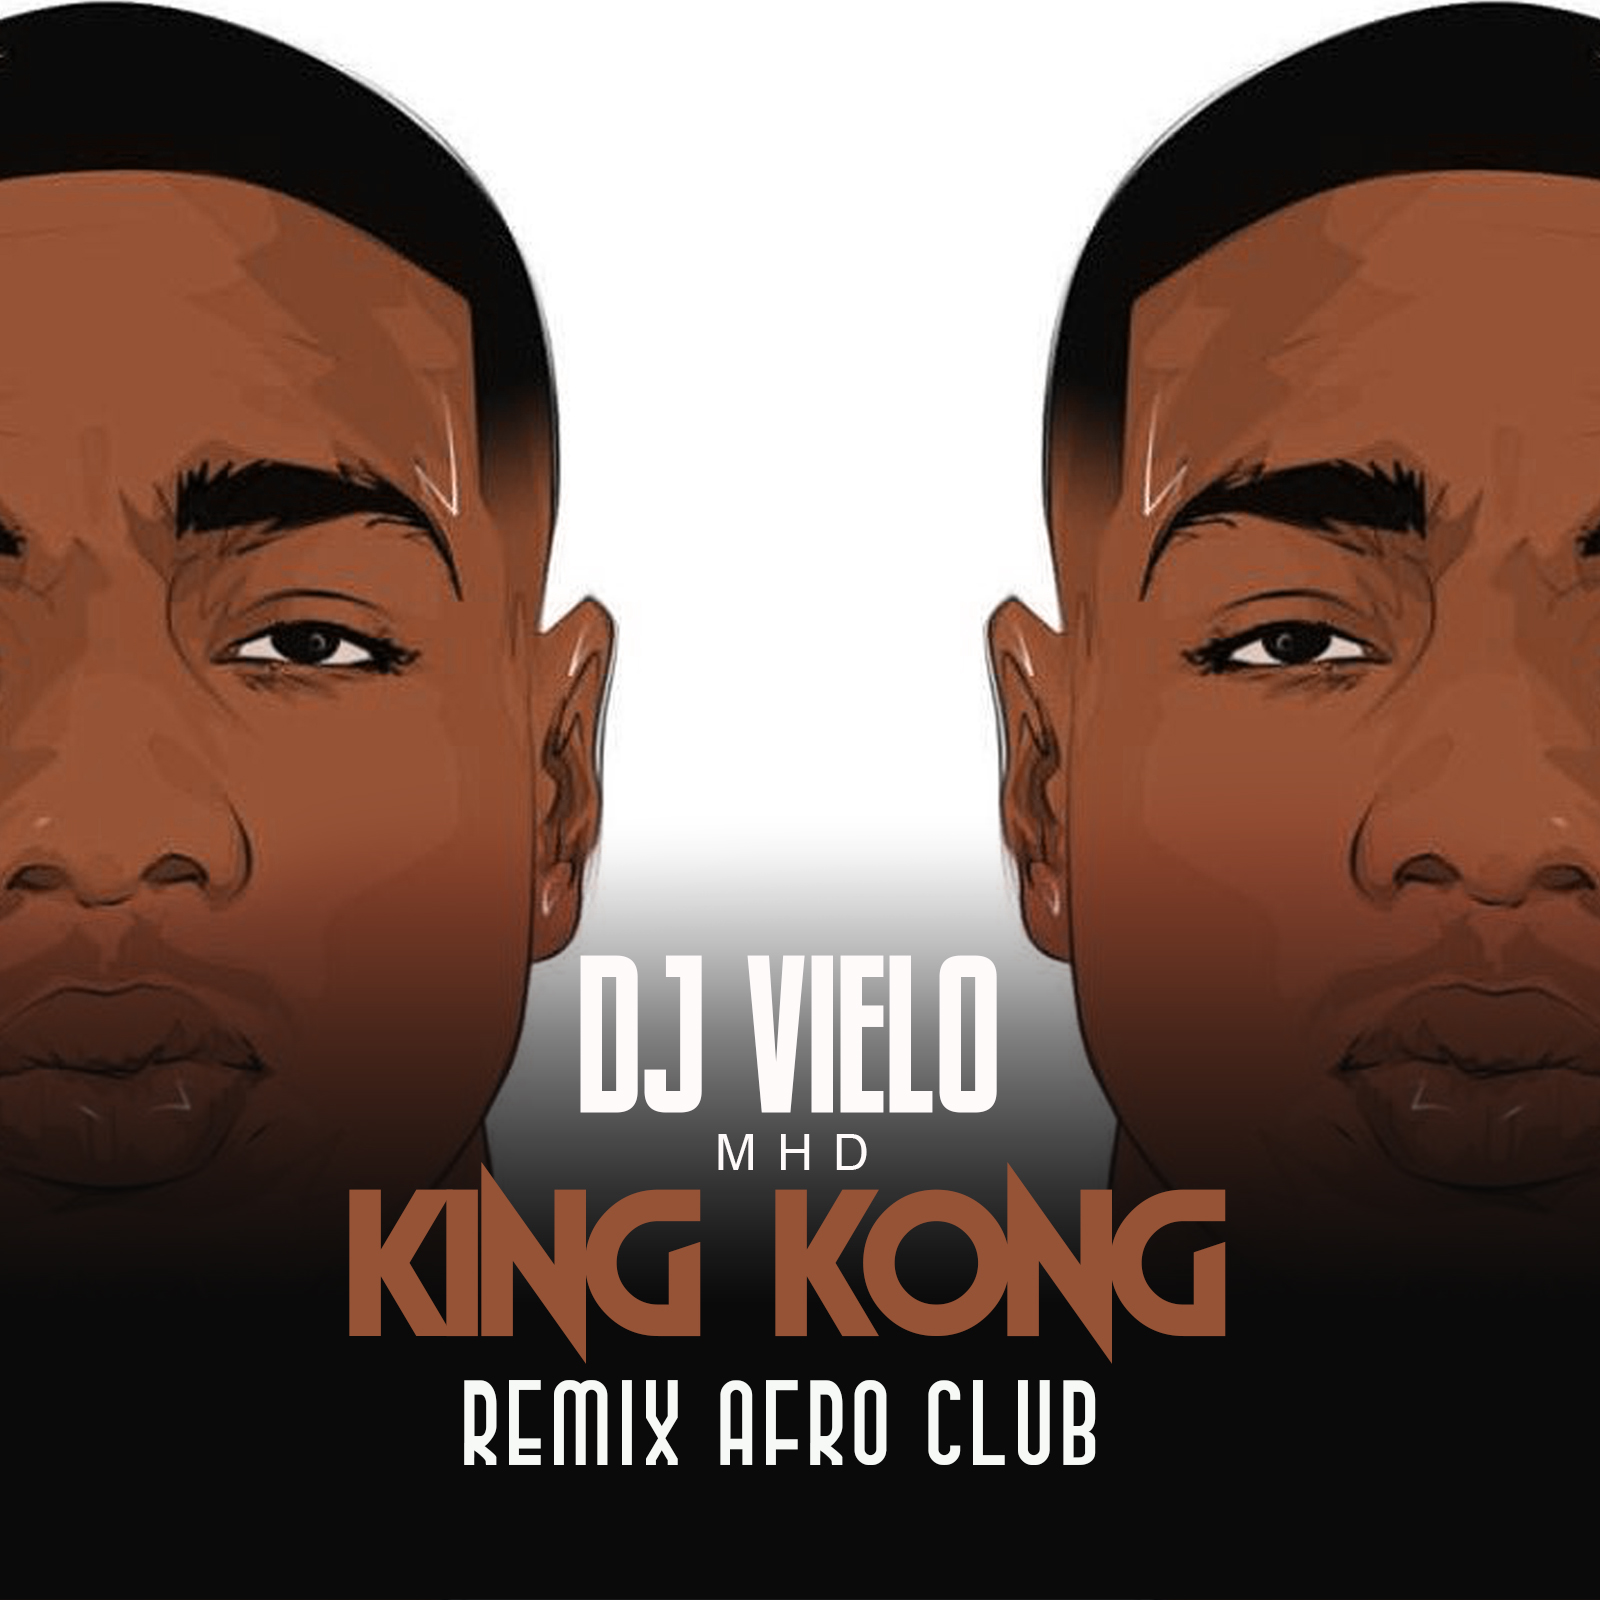 Landa Dj Vielo X MHD - AFRO TRAP Part.11 (King Kong) Remix Afro Club DISPO SUR SPOTIFY, DEEZER, ITUNES